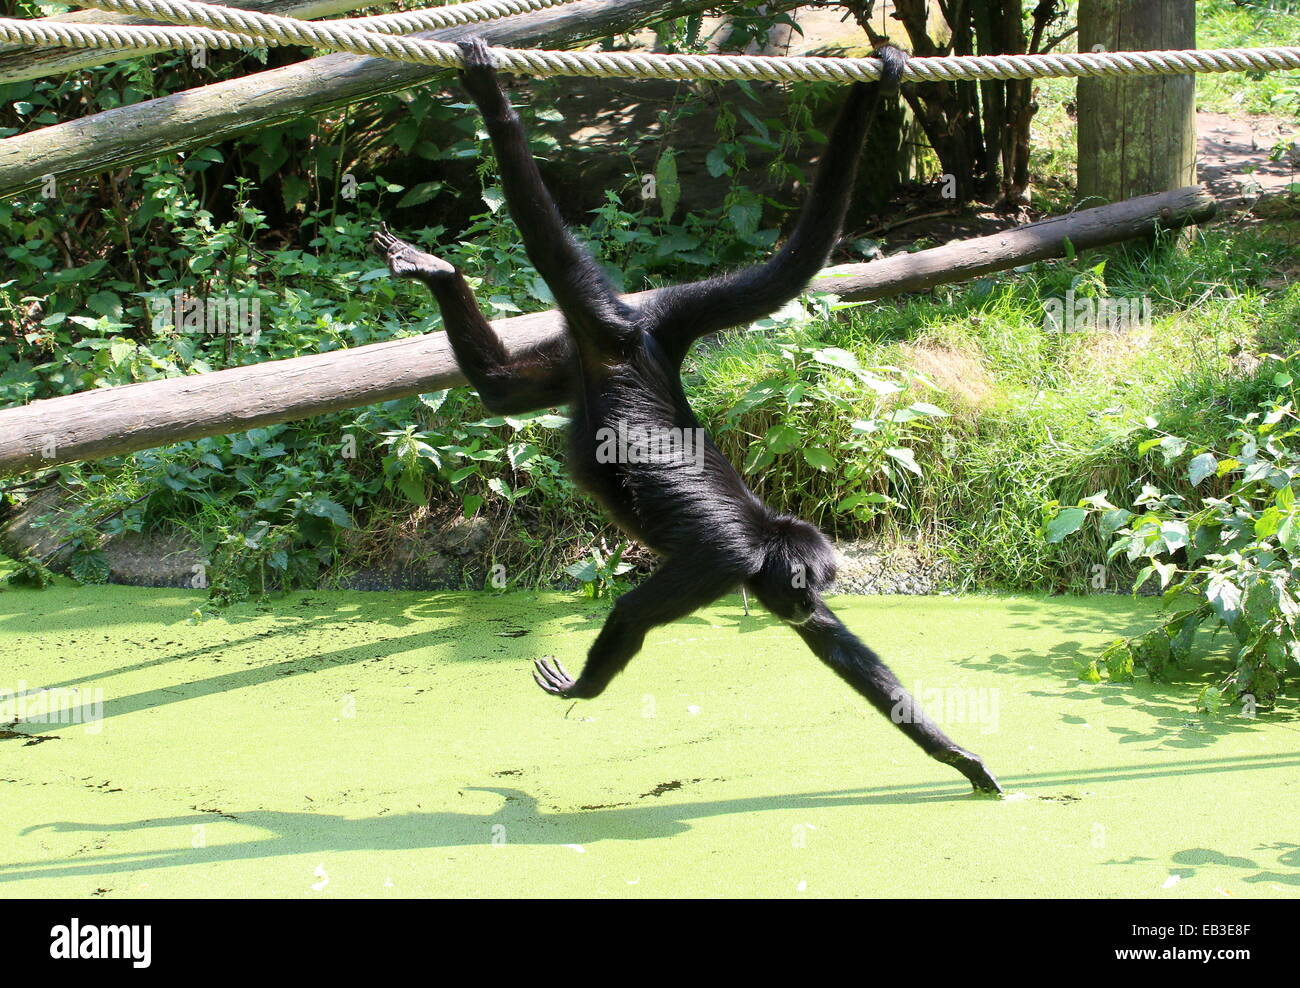 Colombiano a testa nera spider monkey (Ateles fusciceps) appesi per la sua coda prensile in un zoo olandese, la raccolta di frutta Foto Stock